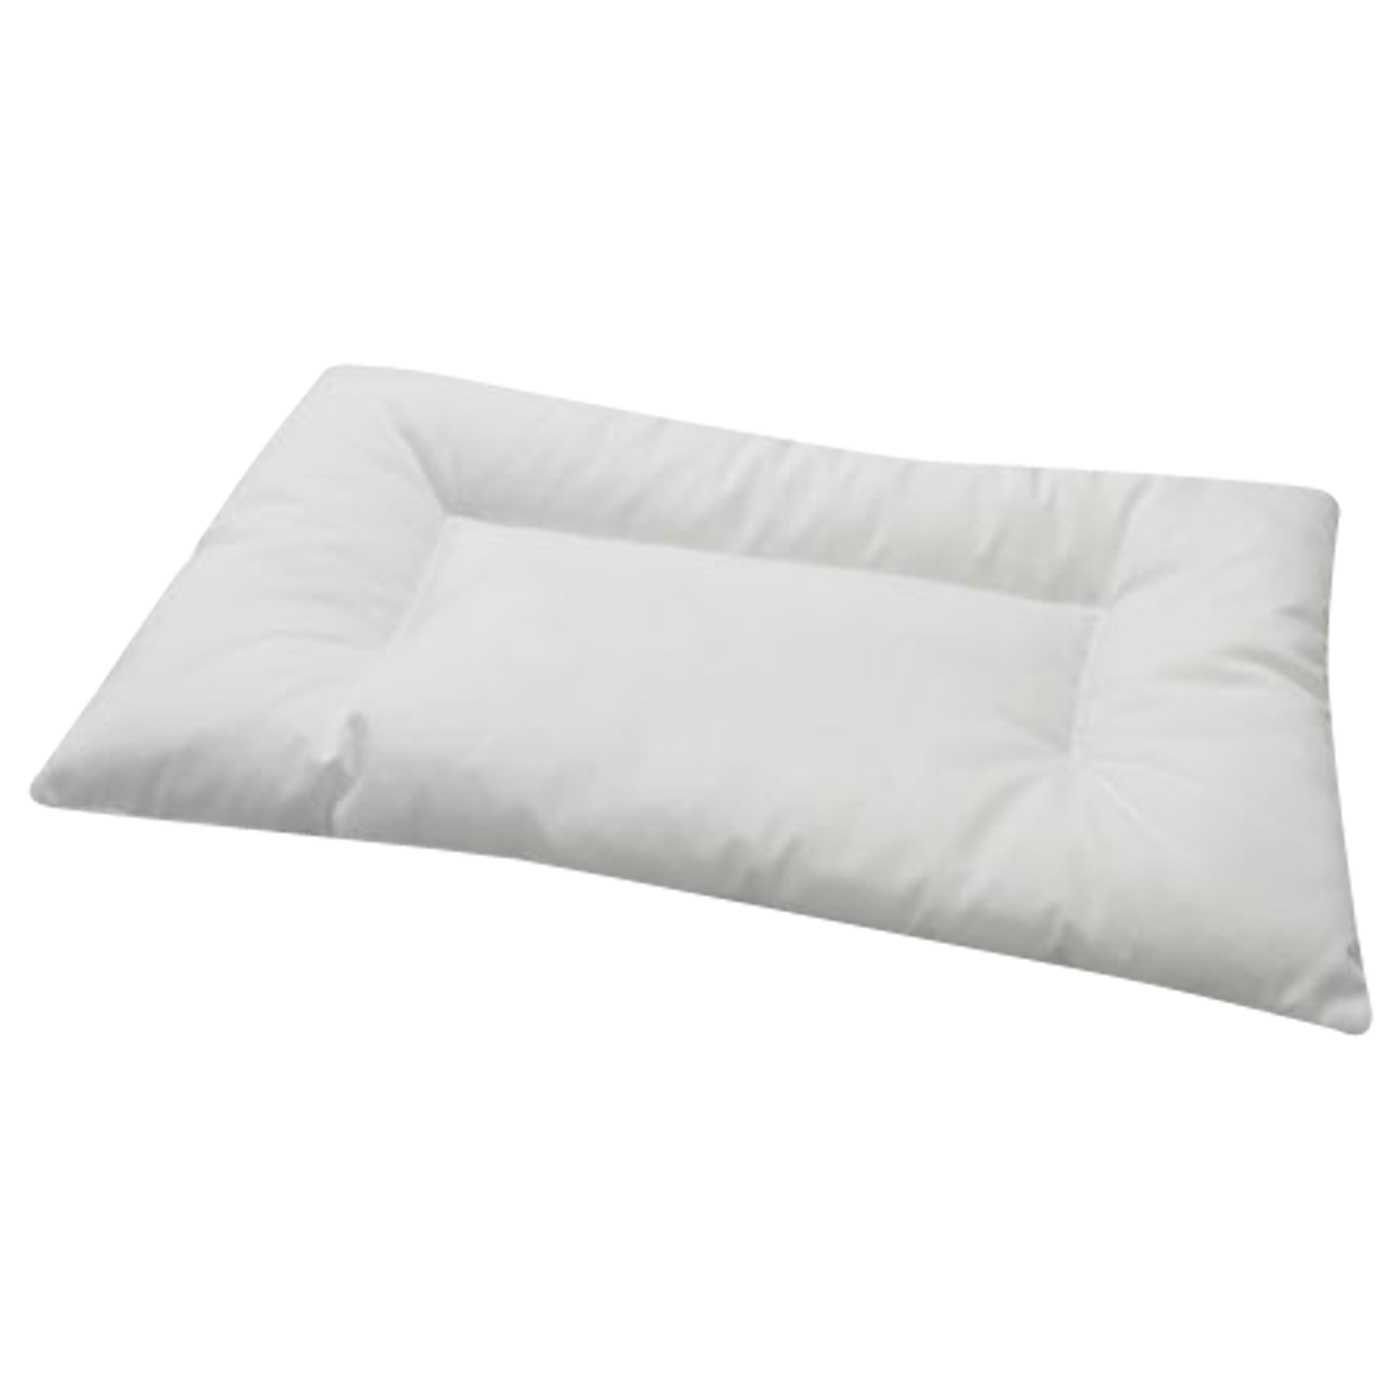 IKEA Len Pillow - 1